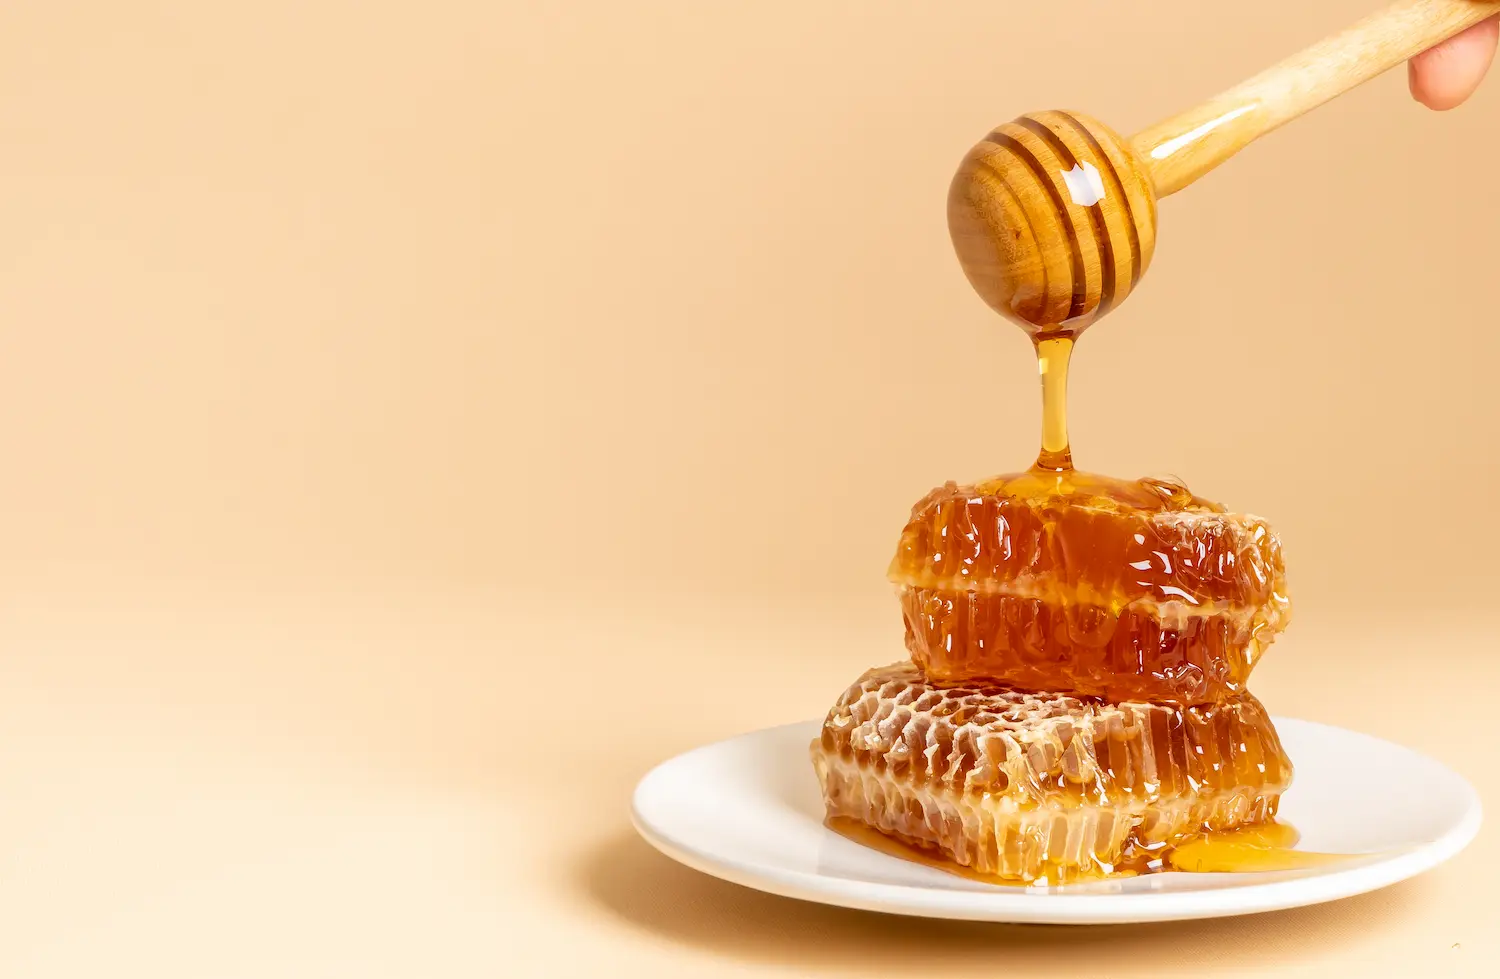 ประโยชน์ของน้ำผึ้งต่อสุขภาพและผิวพรรณ